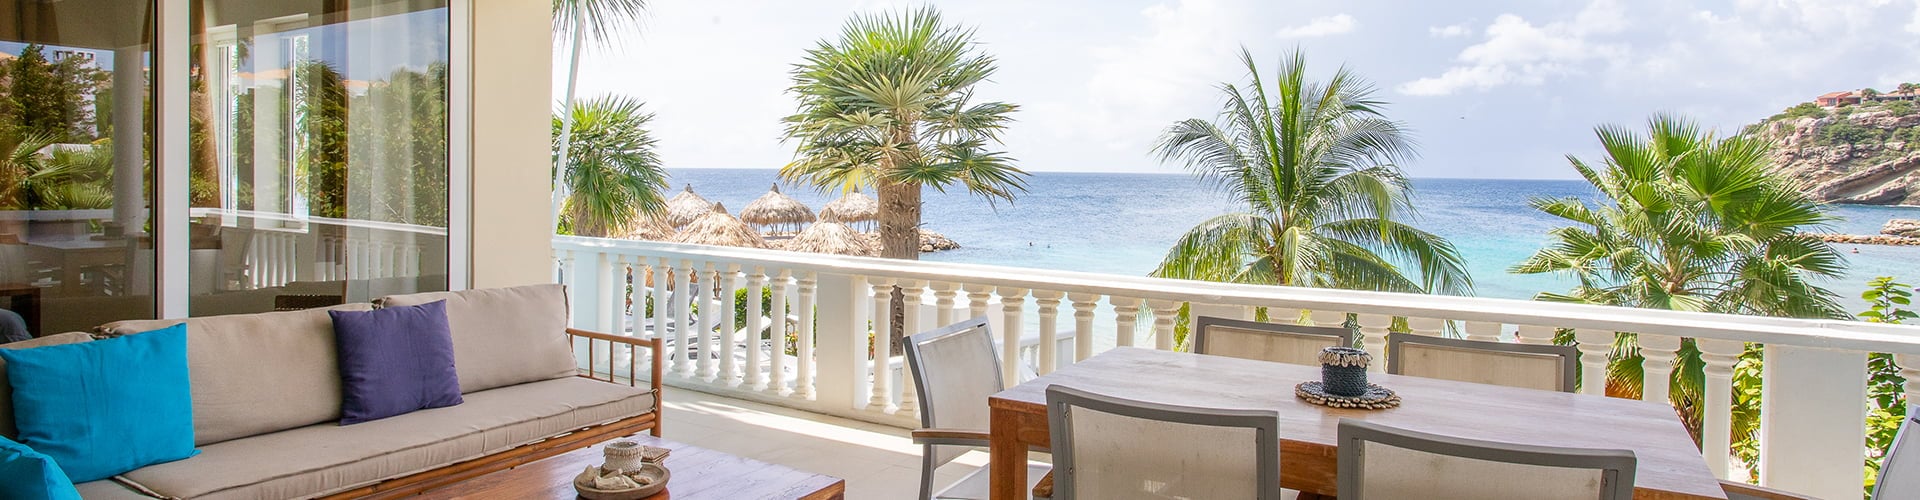 Vakantiehuizen op Curacao met een geweldig uitzicht